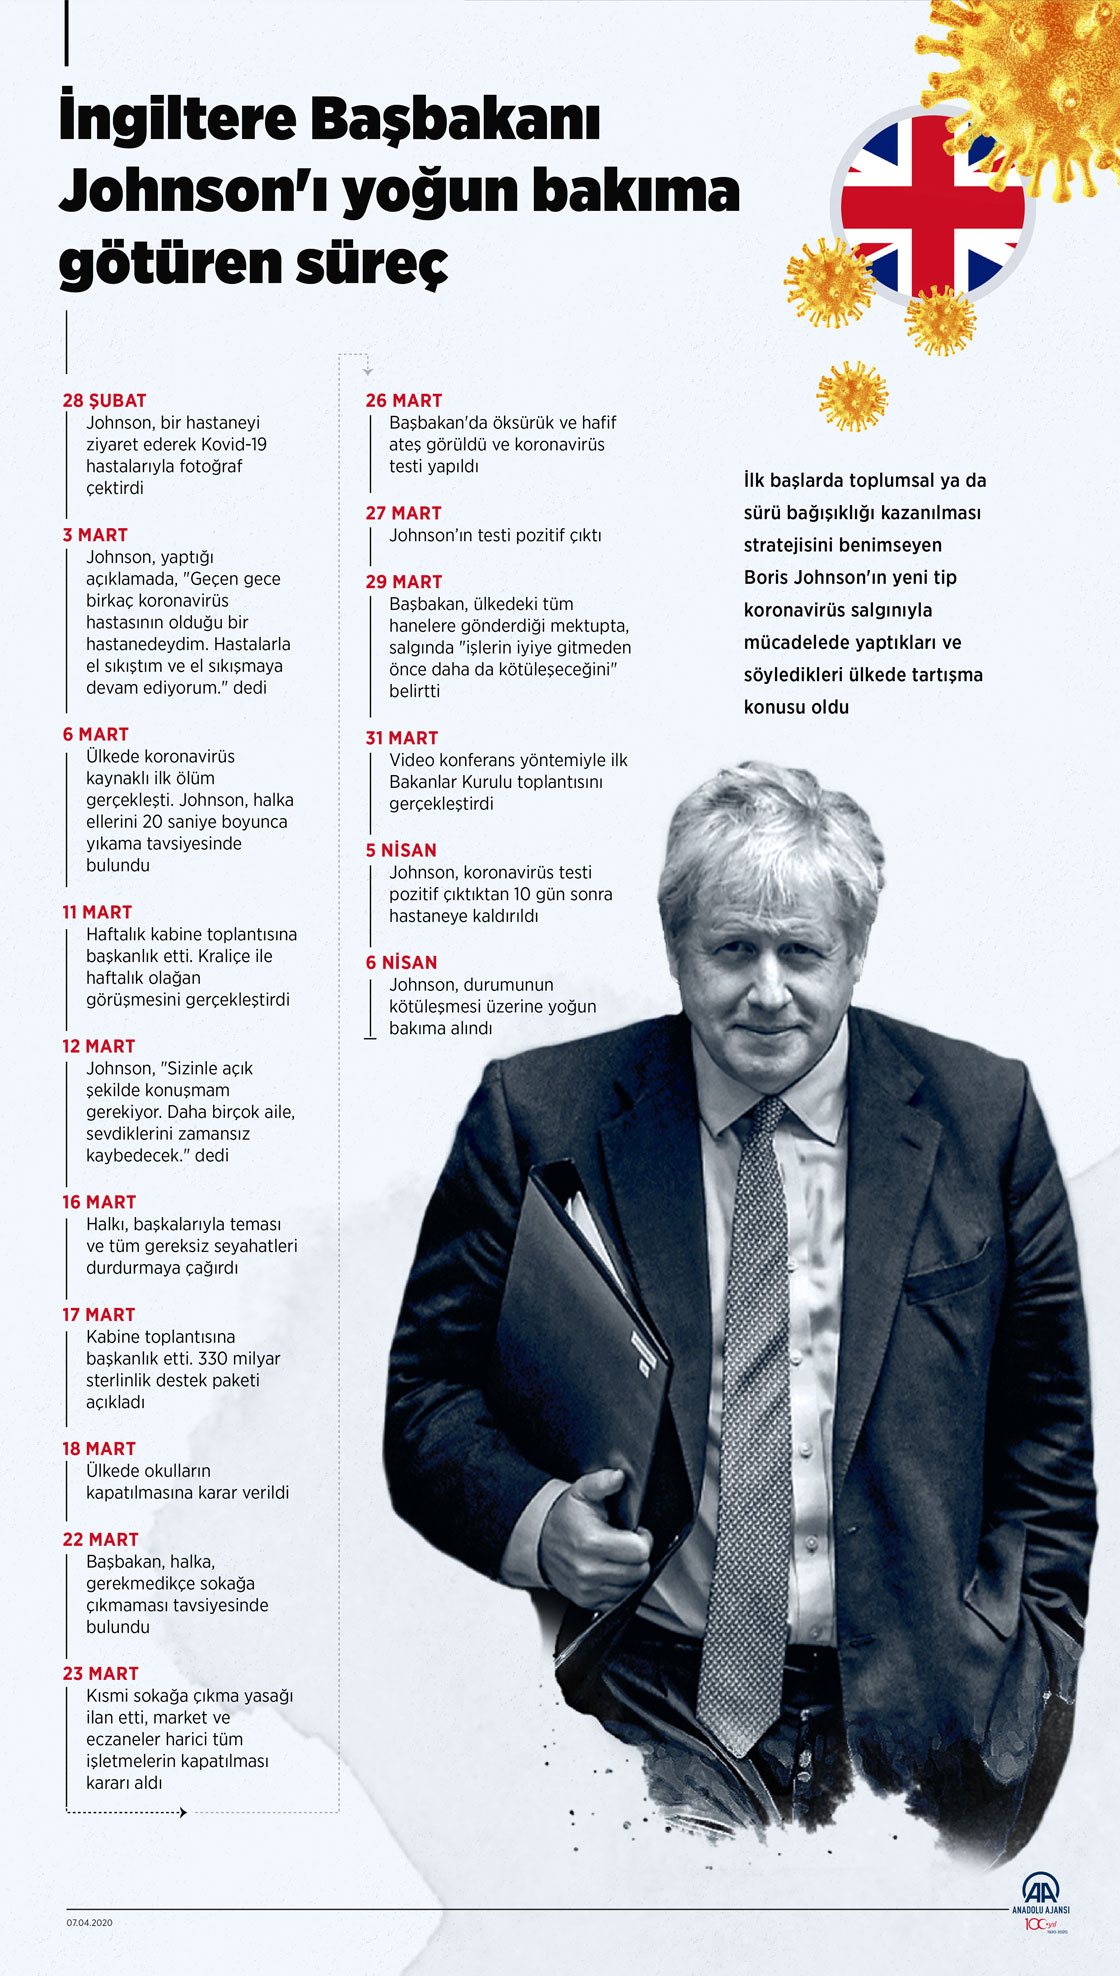 İngiltere Başbakanı Johnson'ı yoğun bakıma götüren süreç